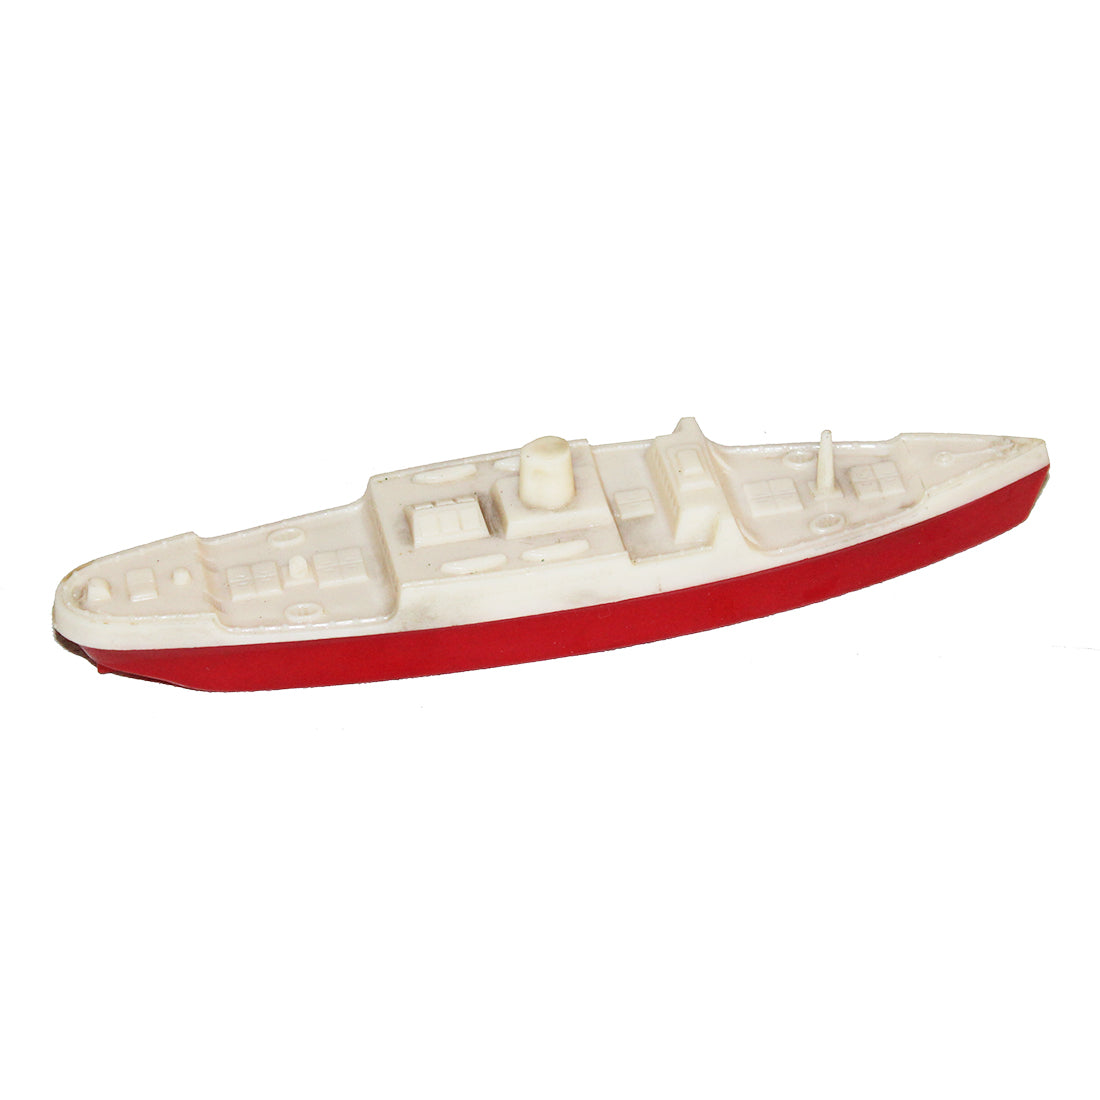 Jouet bateaux en plastique